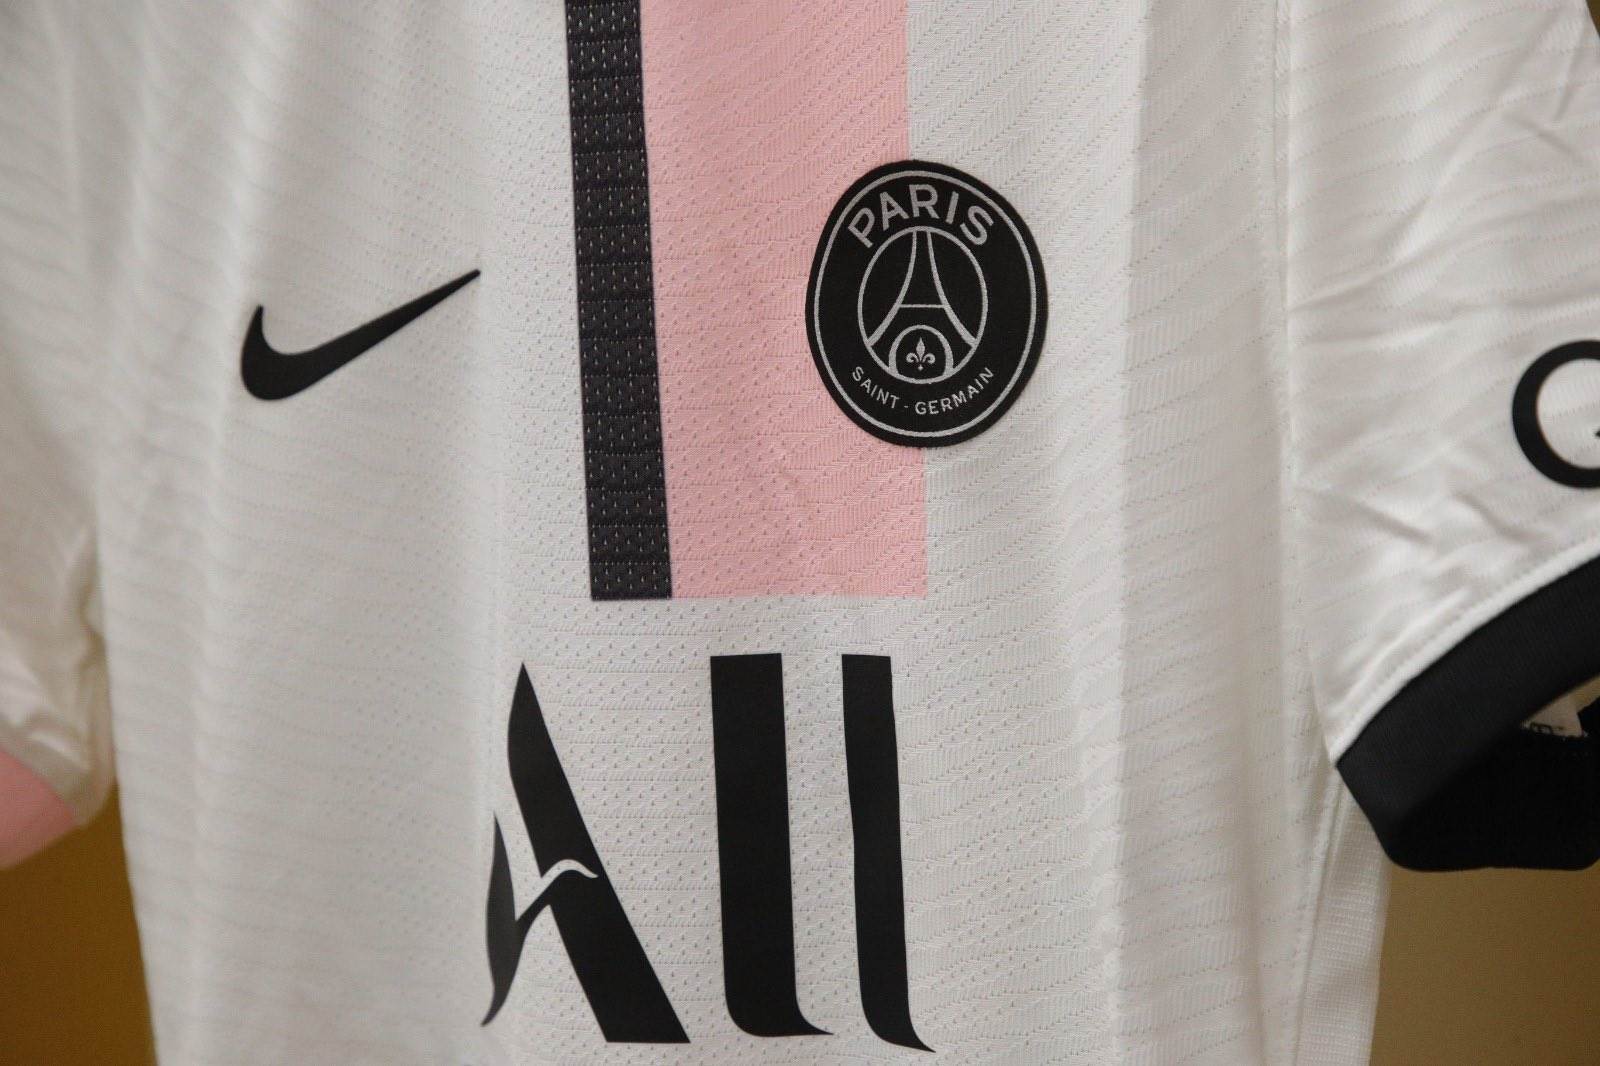 Paris Saint-Germain 21-22 'Paname' Collection Leaked - Louis